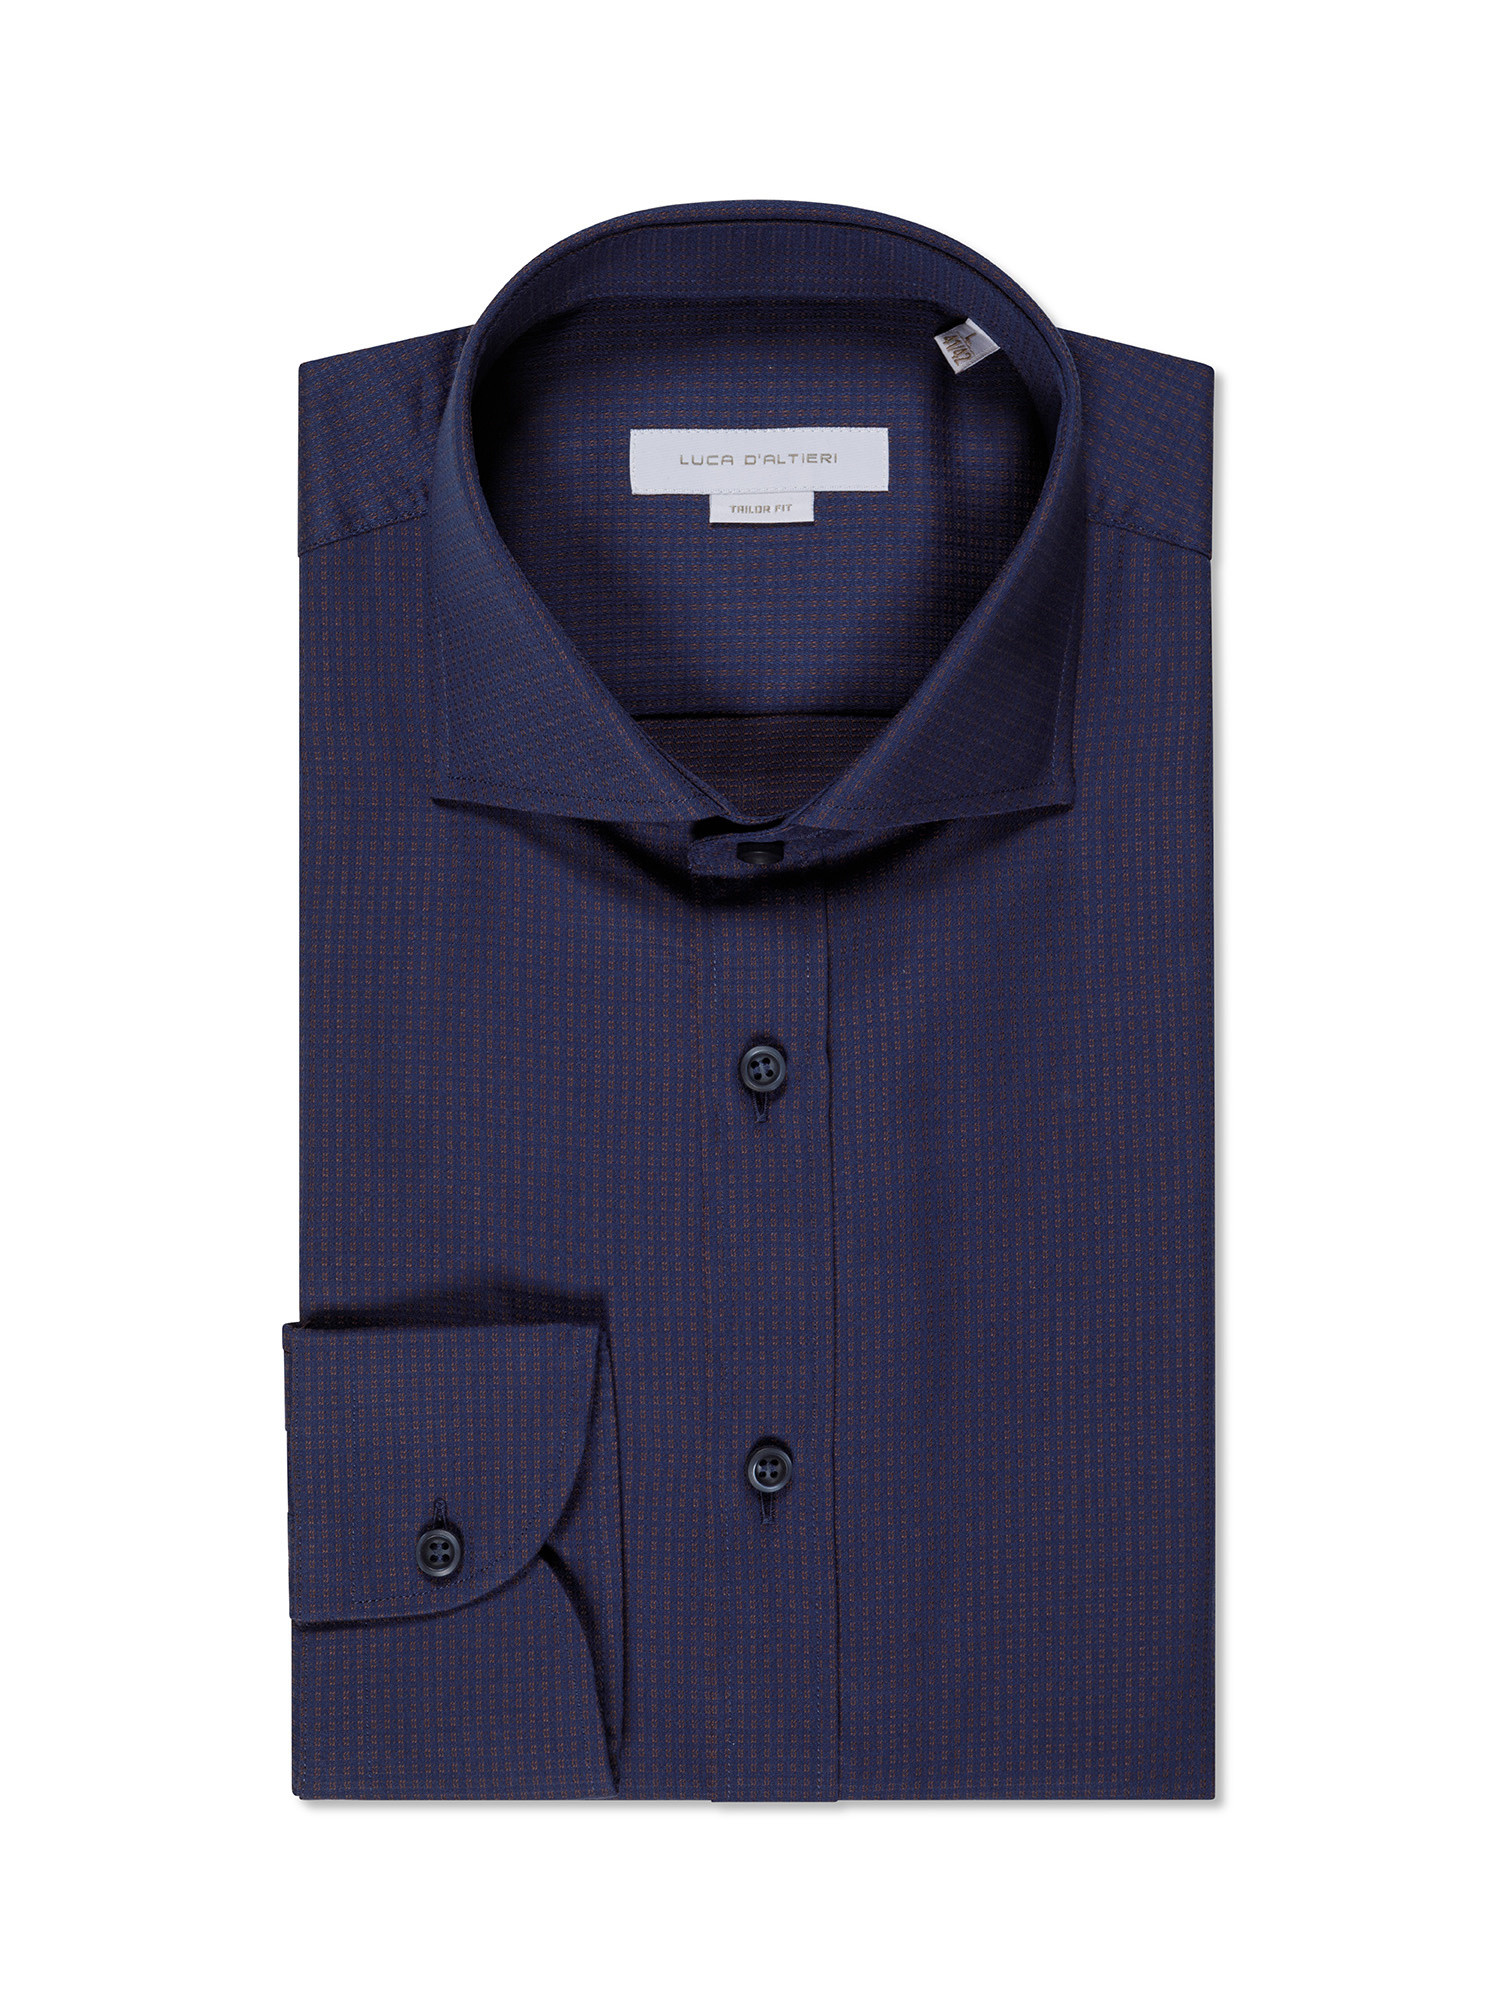 Luca D'Altieri - Camicia tailor fit in puro cotone, Blu 2, large image number 0